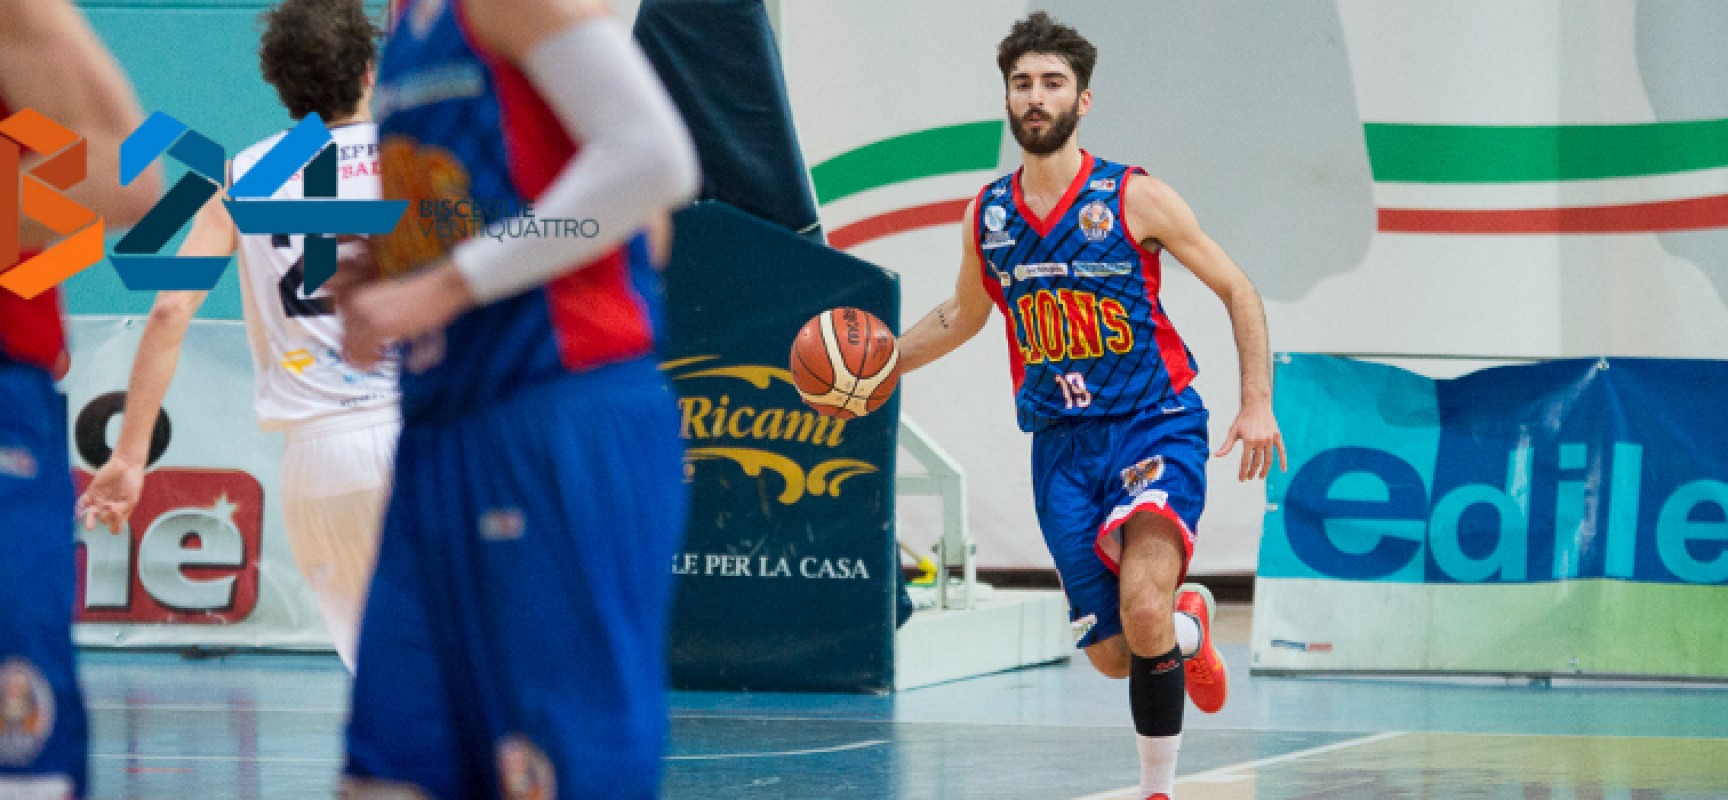 Lions Basket, domani lo storico debutto in Coppa Italia contro Orzinuovi